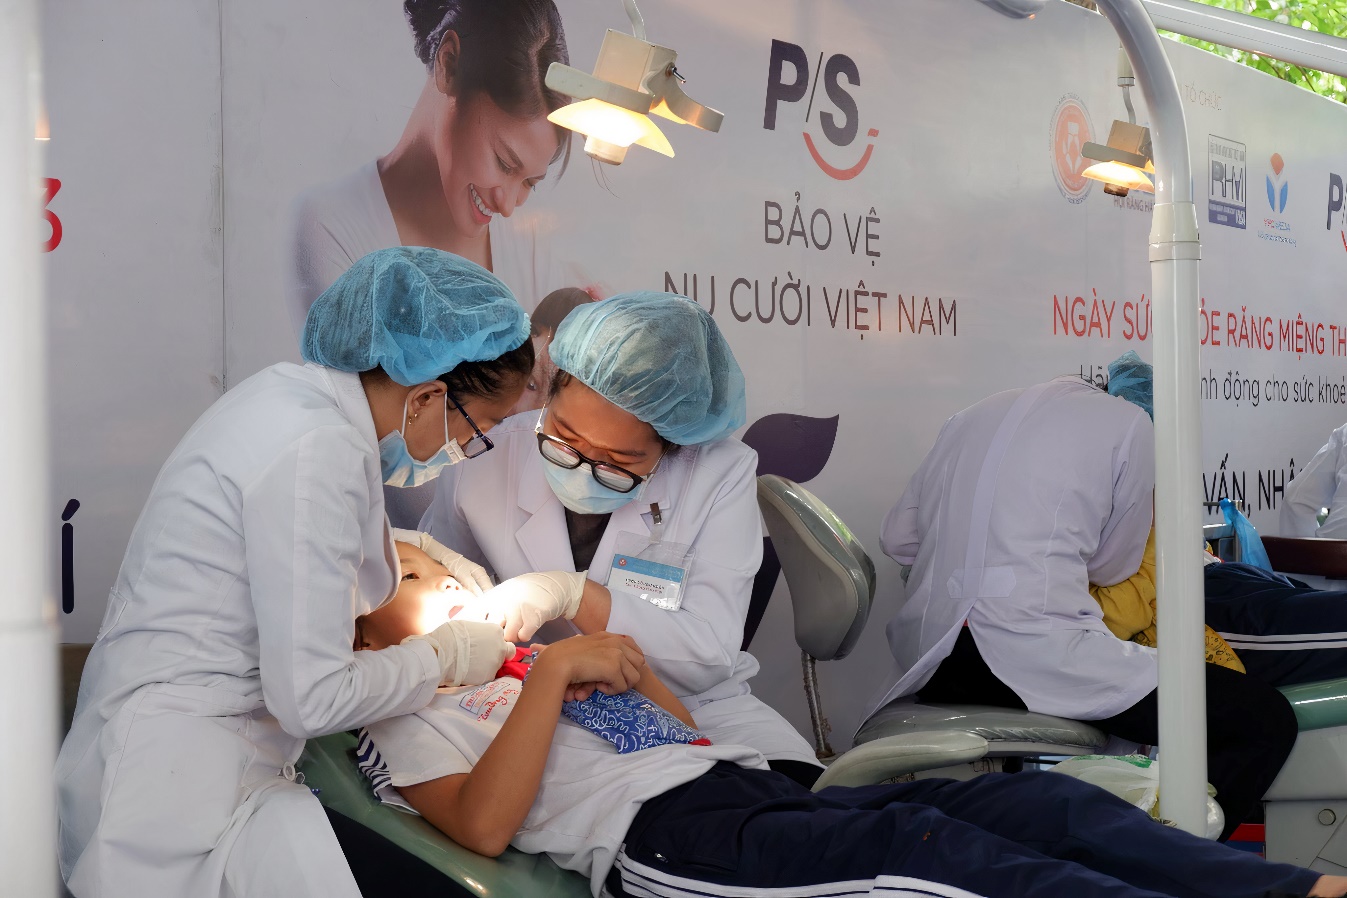 90% người Việt Nam mắc các chứng bệnh răng miệng và chuyện tổng đài 18007004 ra đời - Ảnh 2.